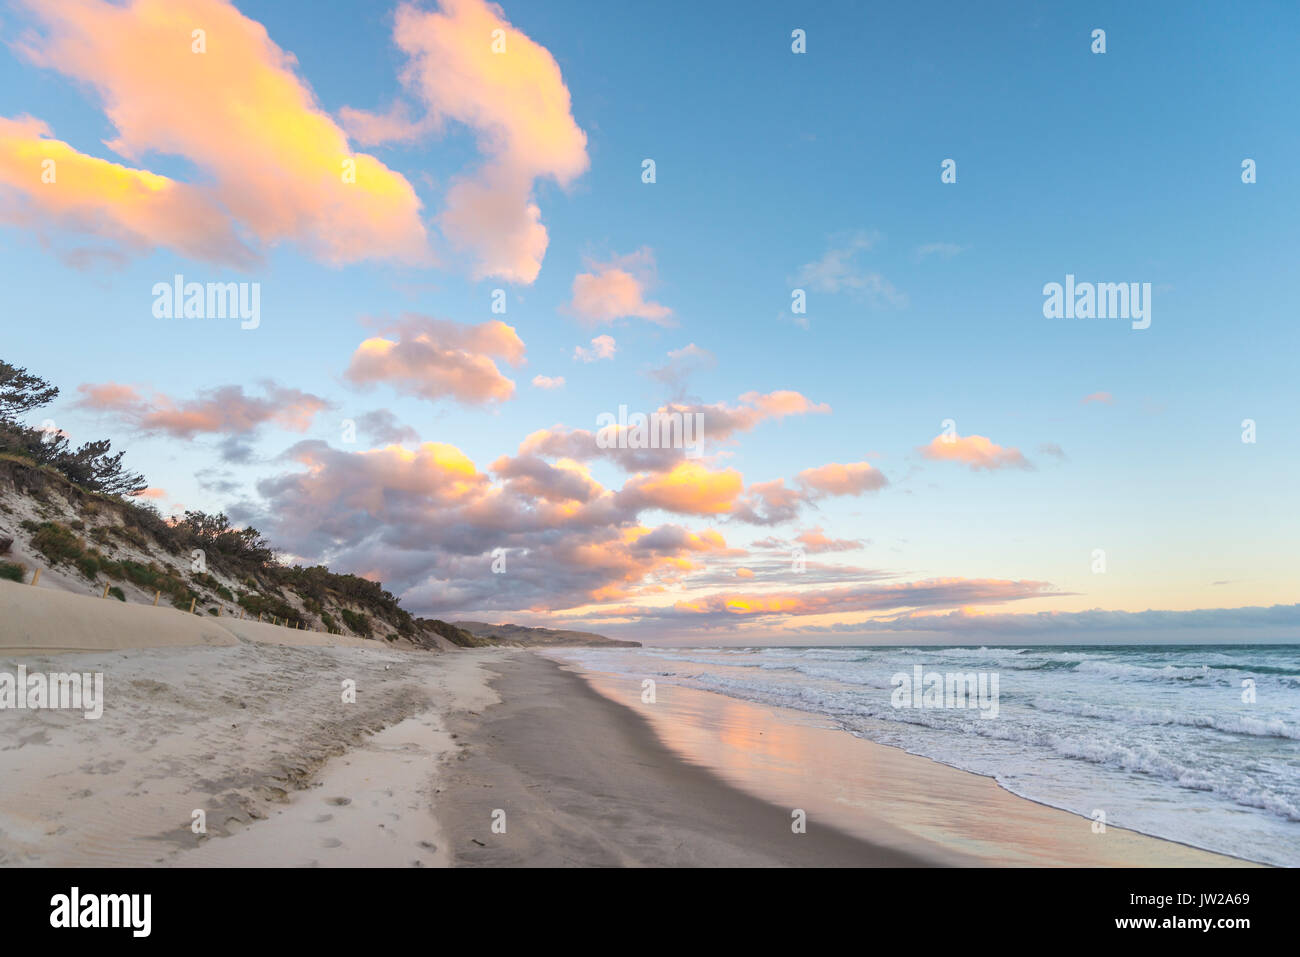 Plage de St clairs, coucher de soleil sur la plage, Otago, île du Sud, Nouvelle-Zélande Banque D'Images